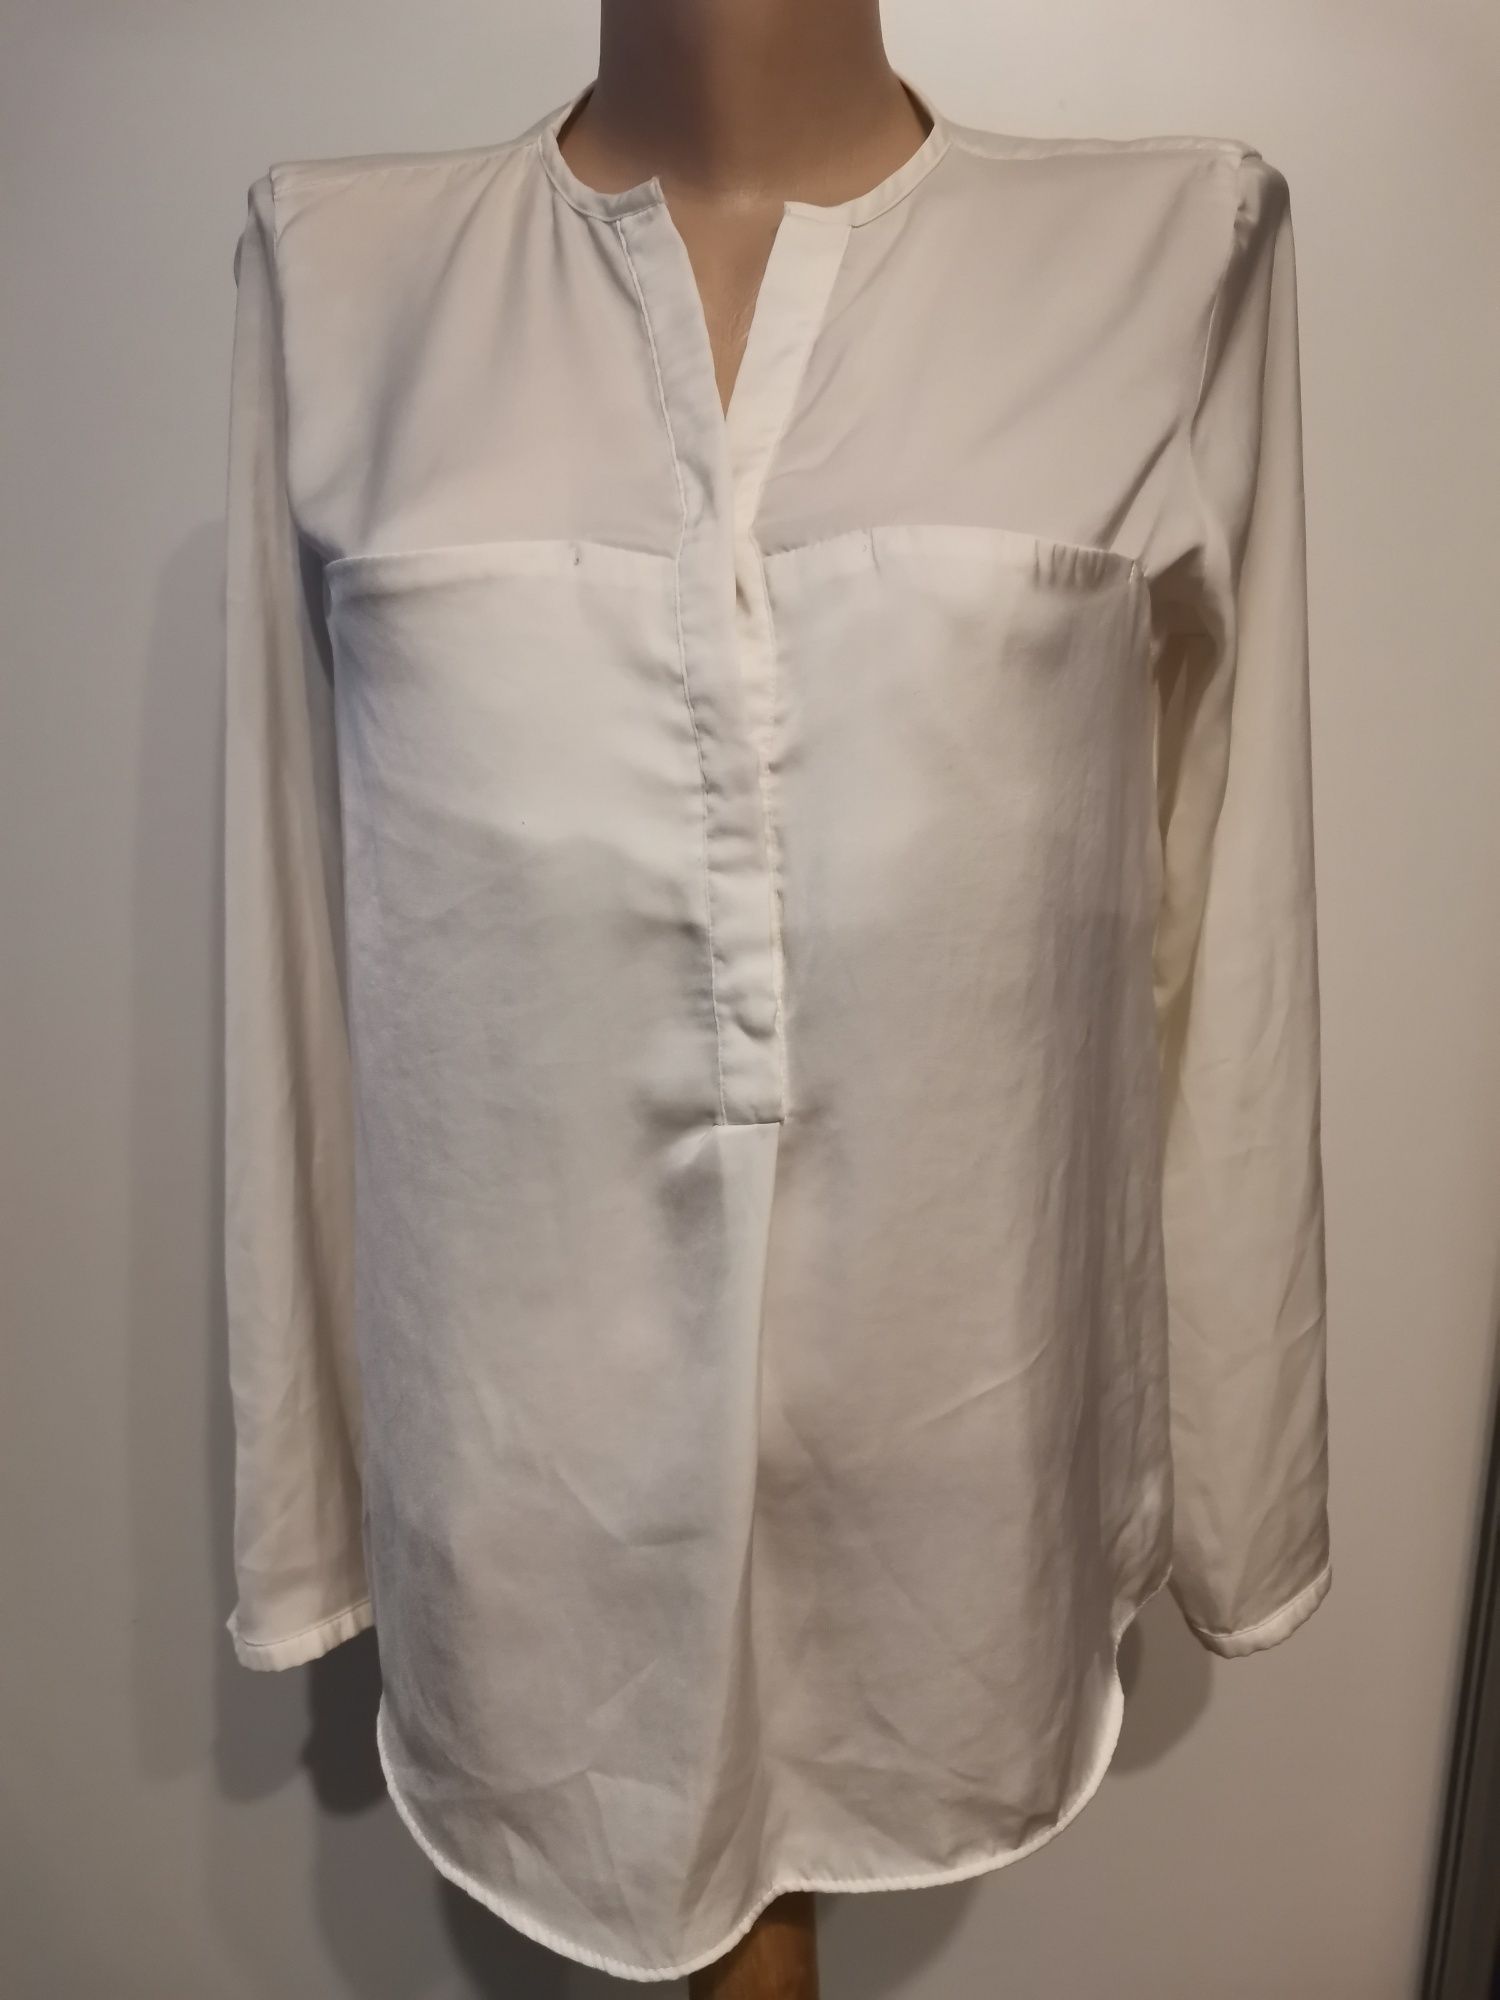 #Zara bluzka damska, koszula rozm 36, biała, klasyczna, praca, biuro